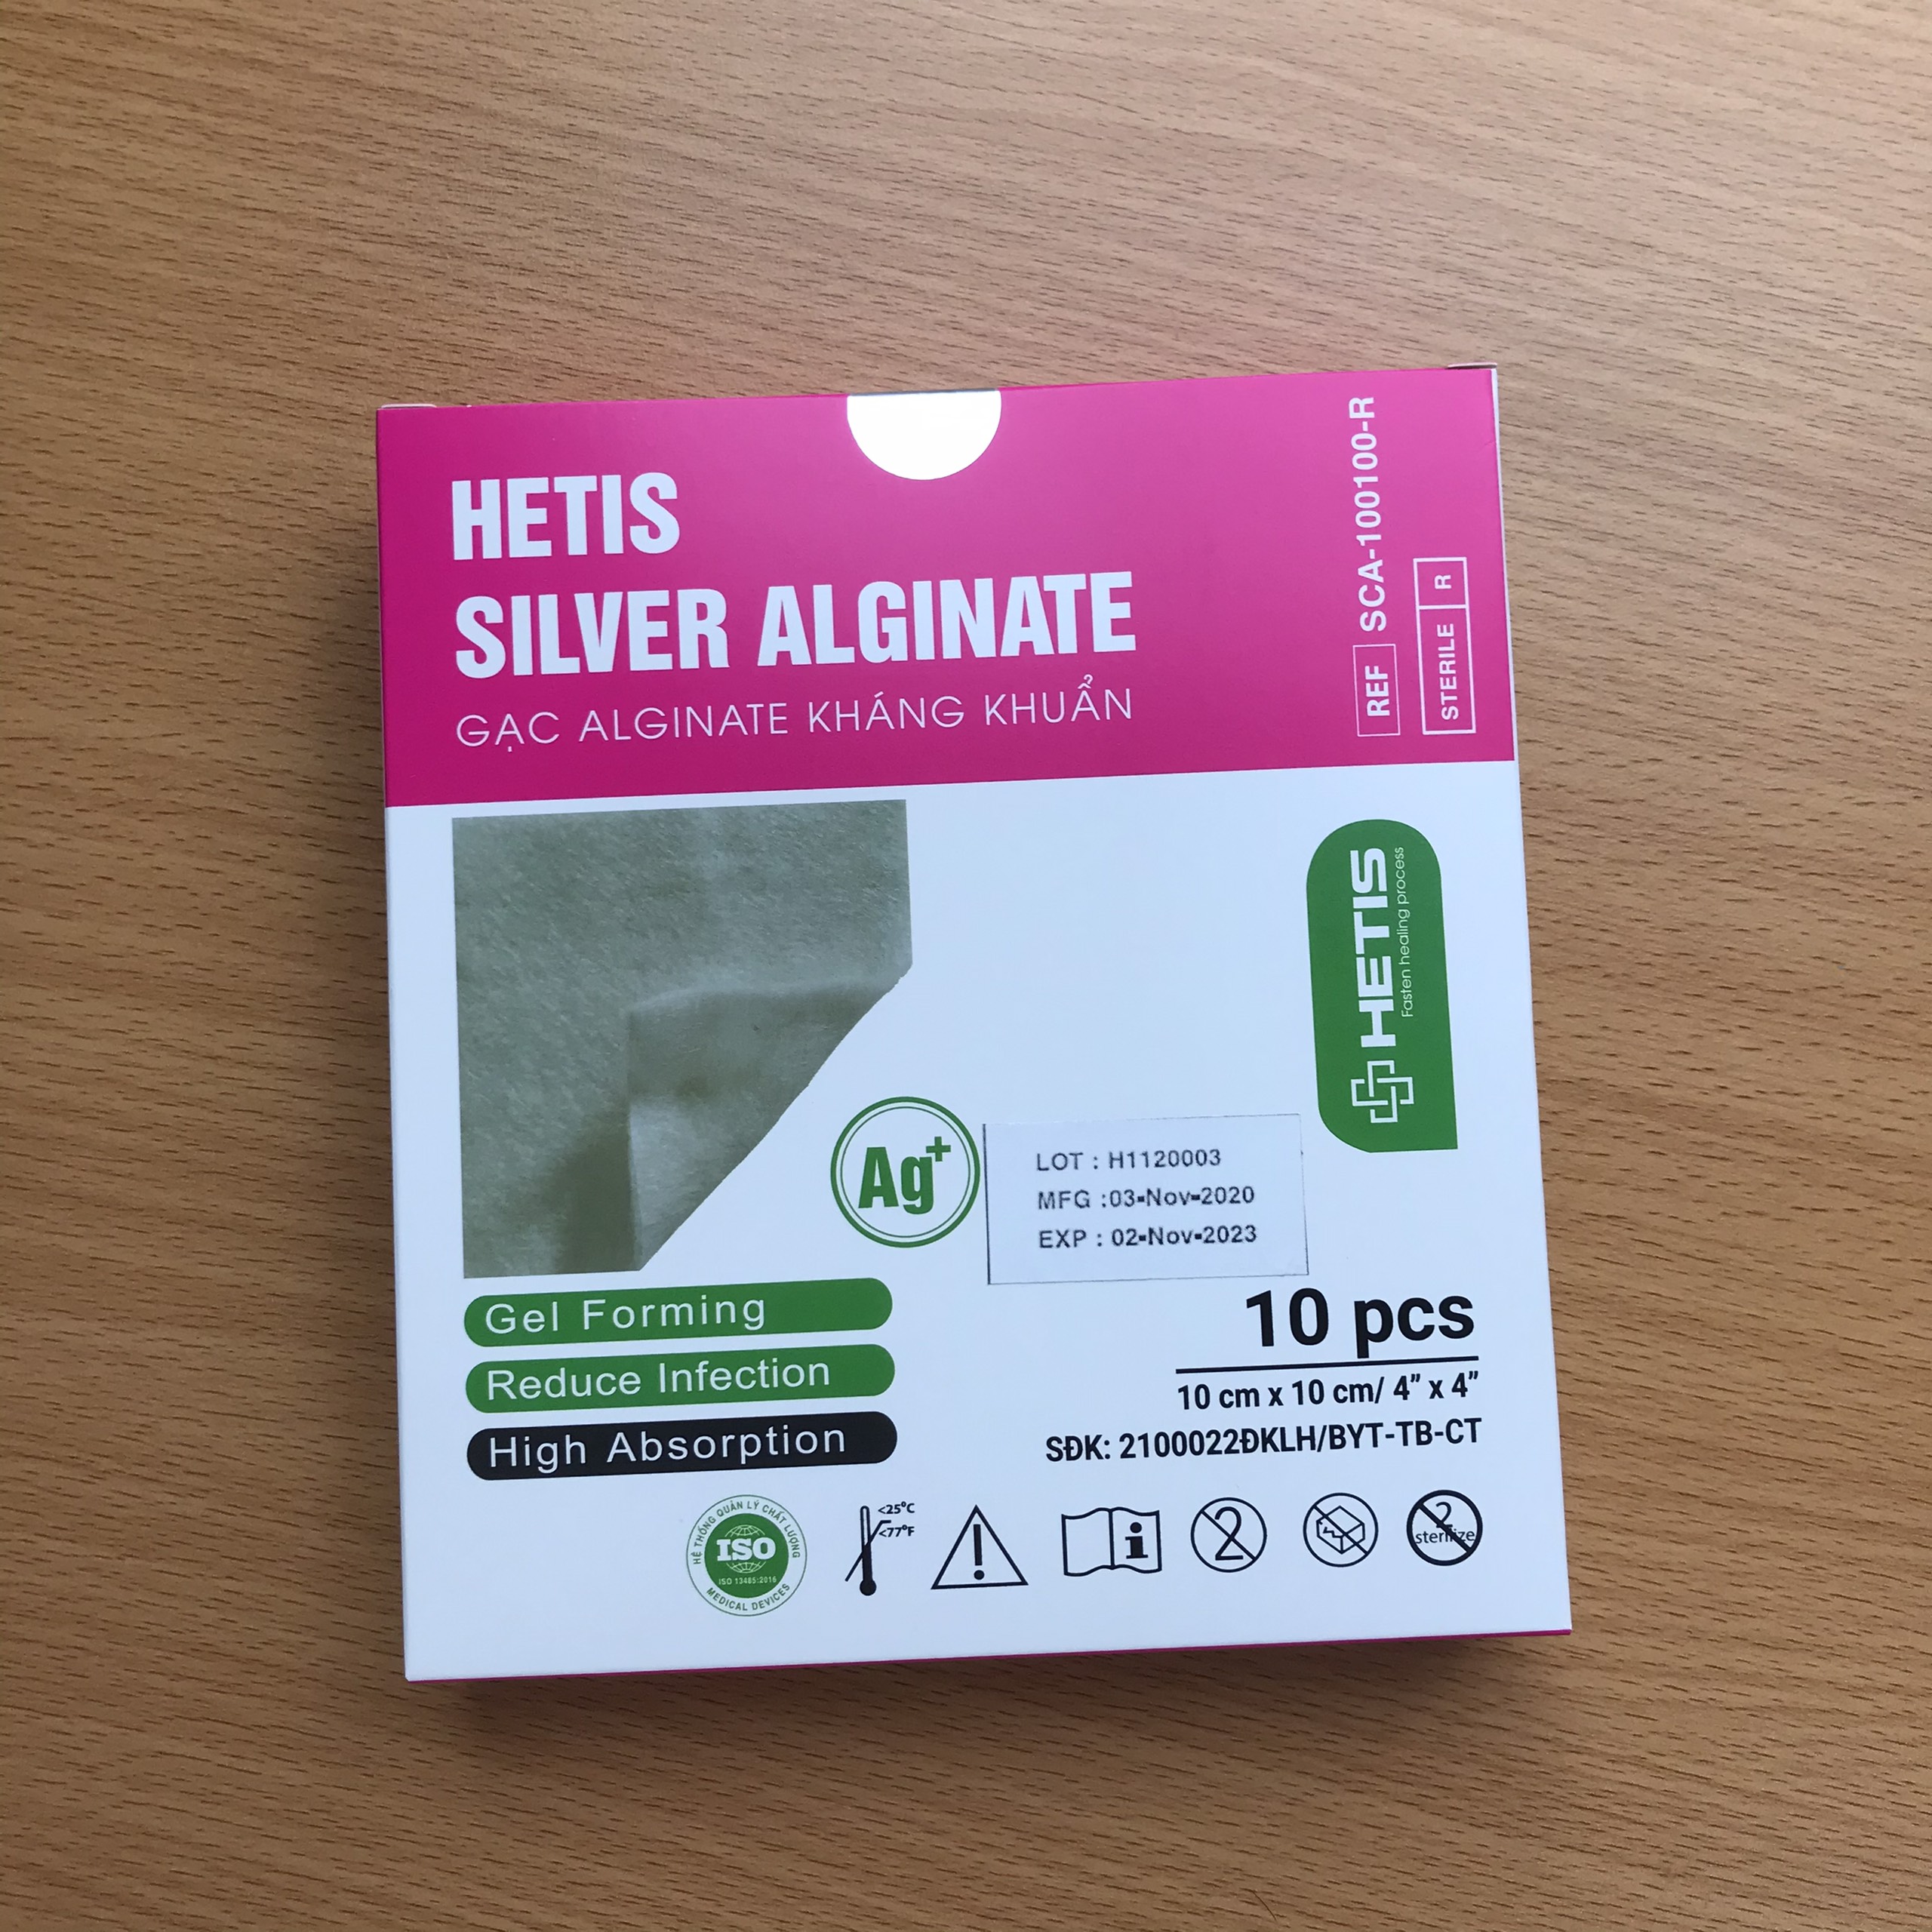 Gạc chăm sóc vết thương Alginate tẩm bạc kháng khuẩn HETIS SILVER ALGINATE - Dùng cho vết thương có nguy cơ nhiễm trùng